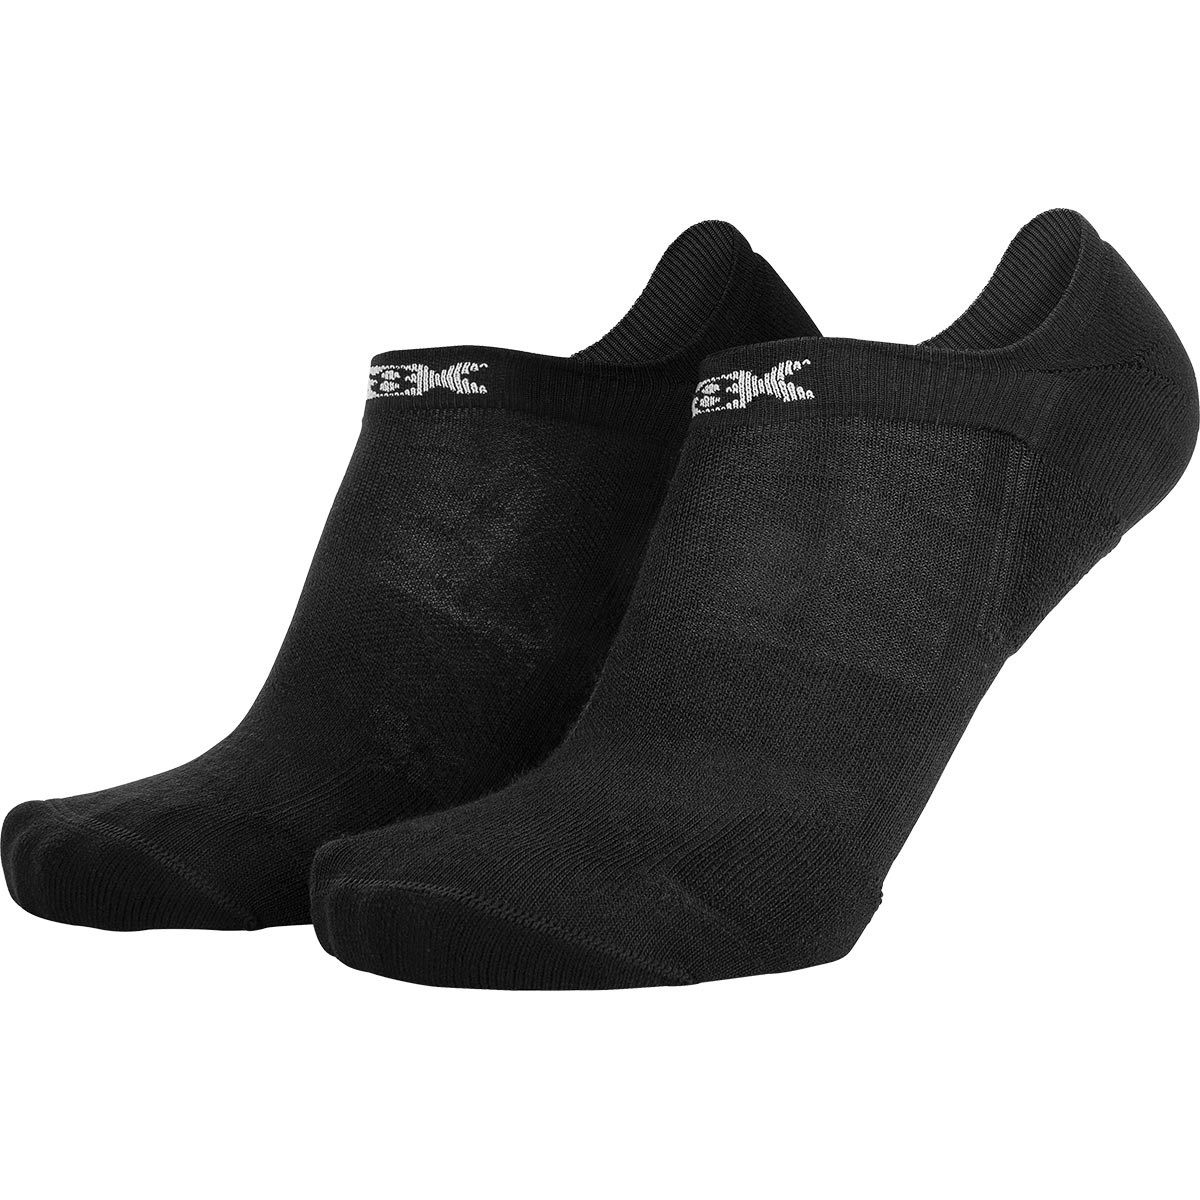 Eightsox Sneaker Merino Socken 2er Pack von Eightsox